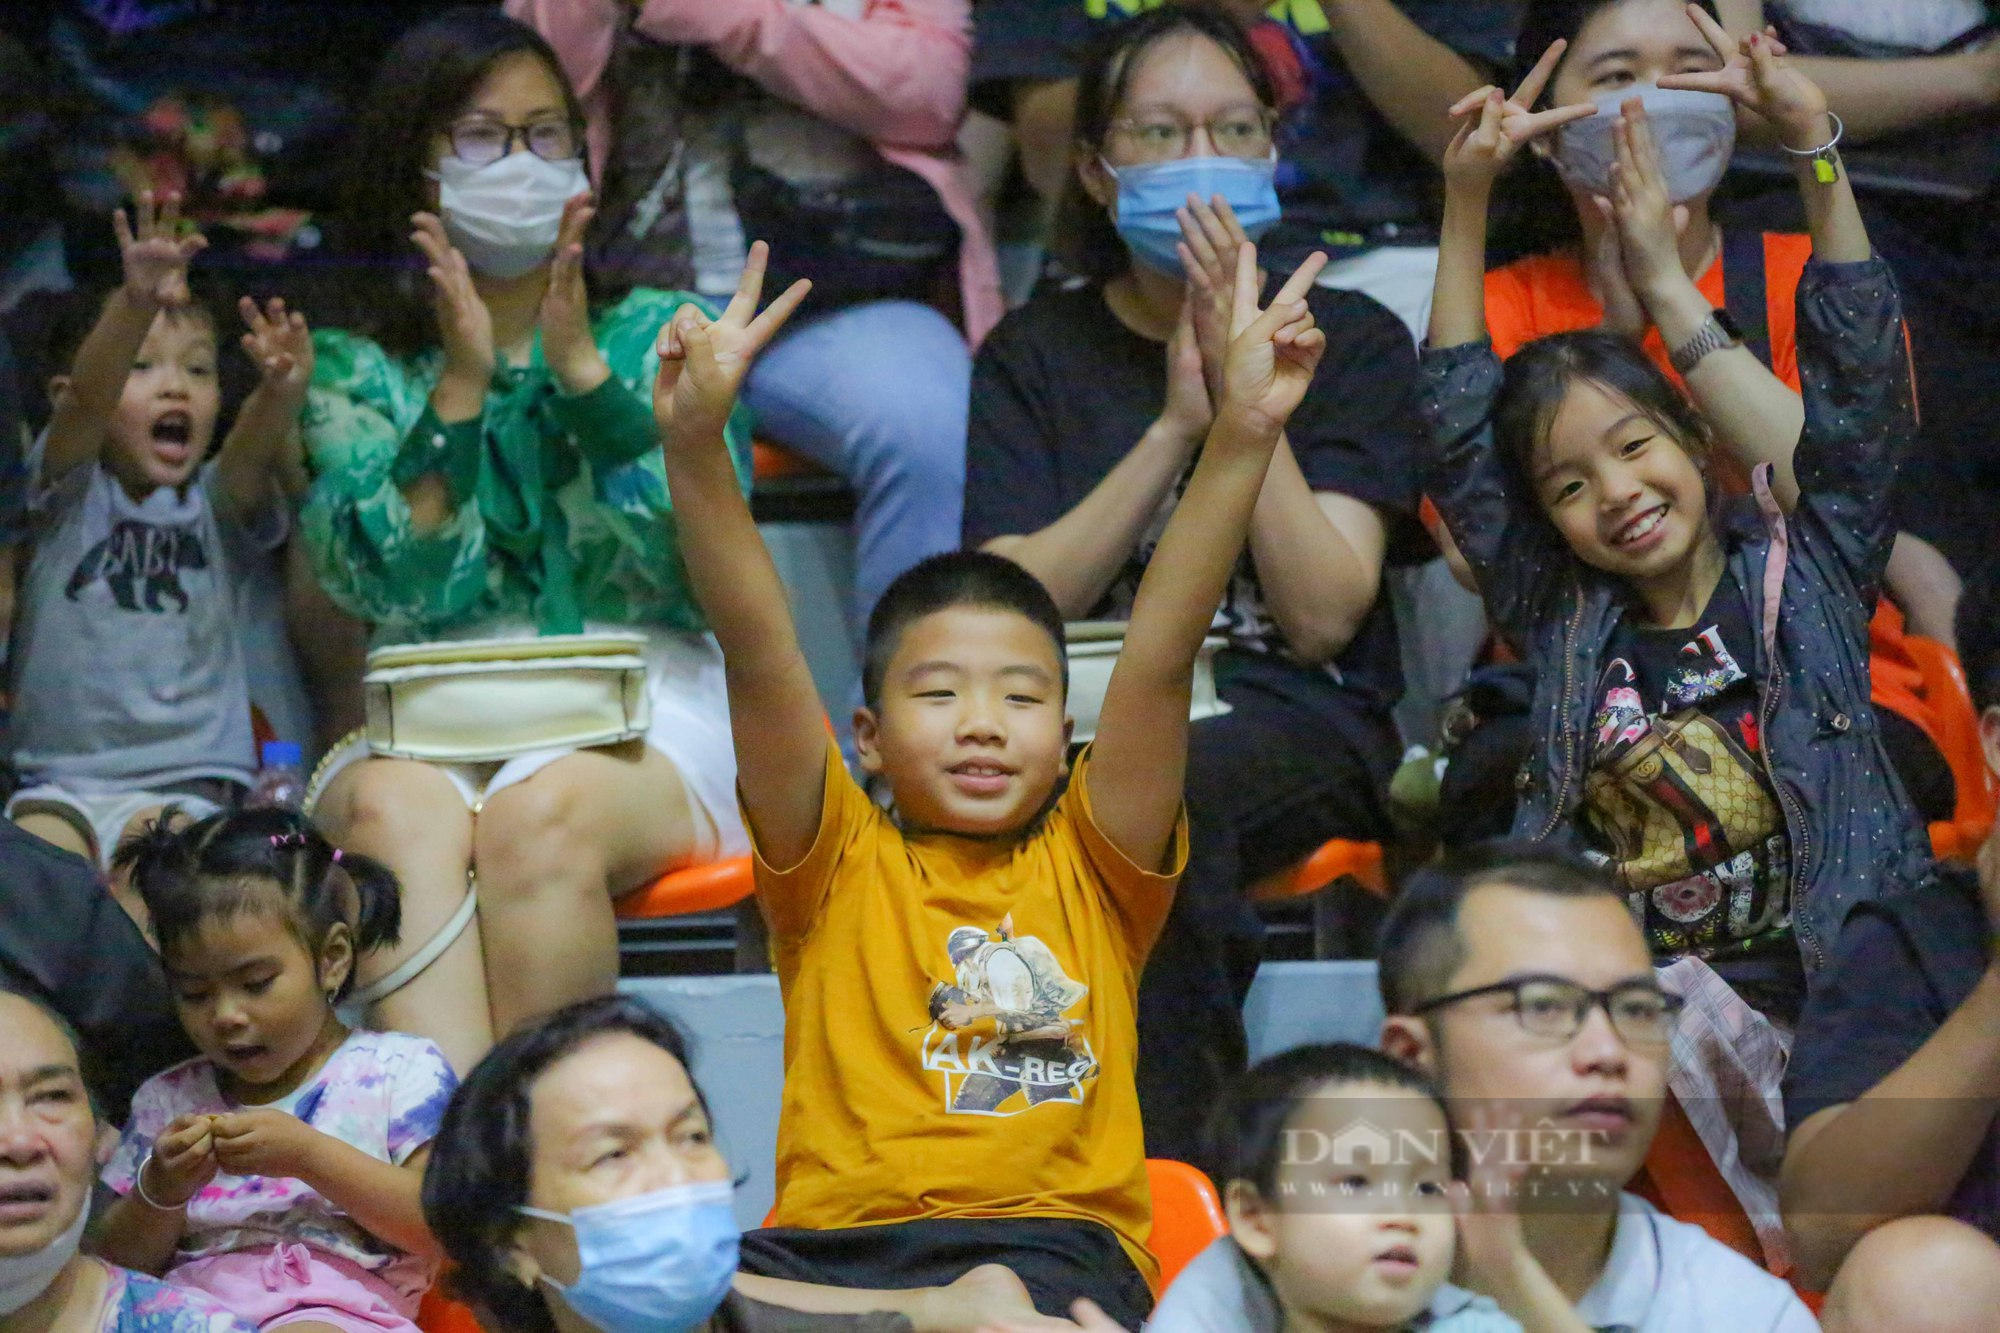 Dàn hot girl cổ vũ cực nhiệt trong chiến thắng của đội tuyển bóng rổ Việt Nam - Ảnh 7.